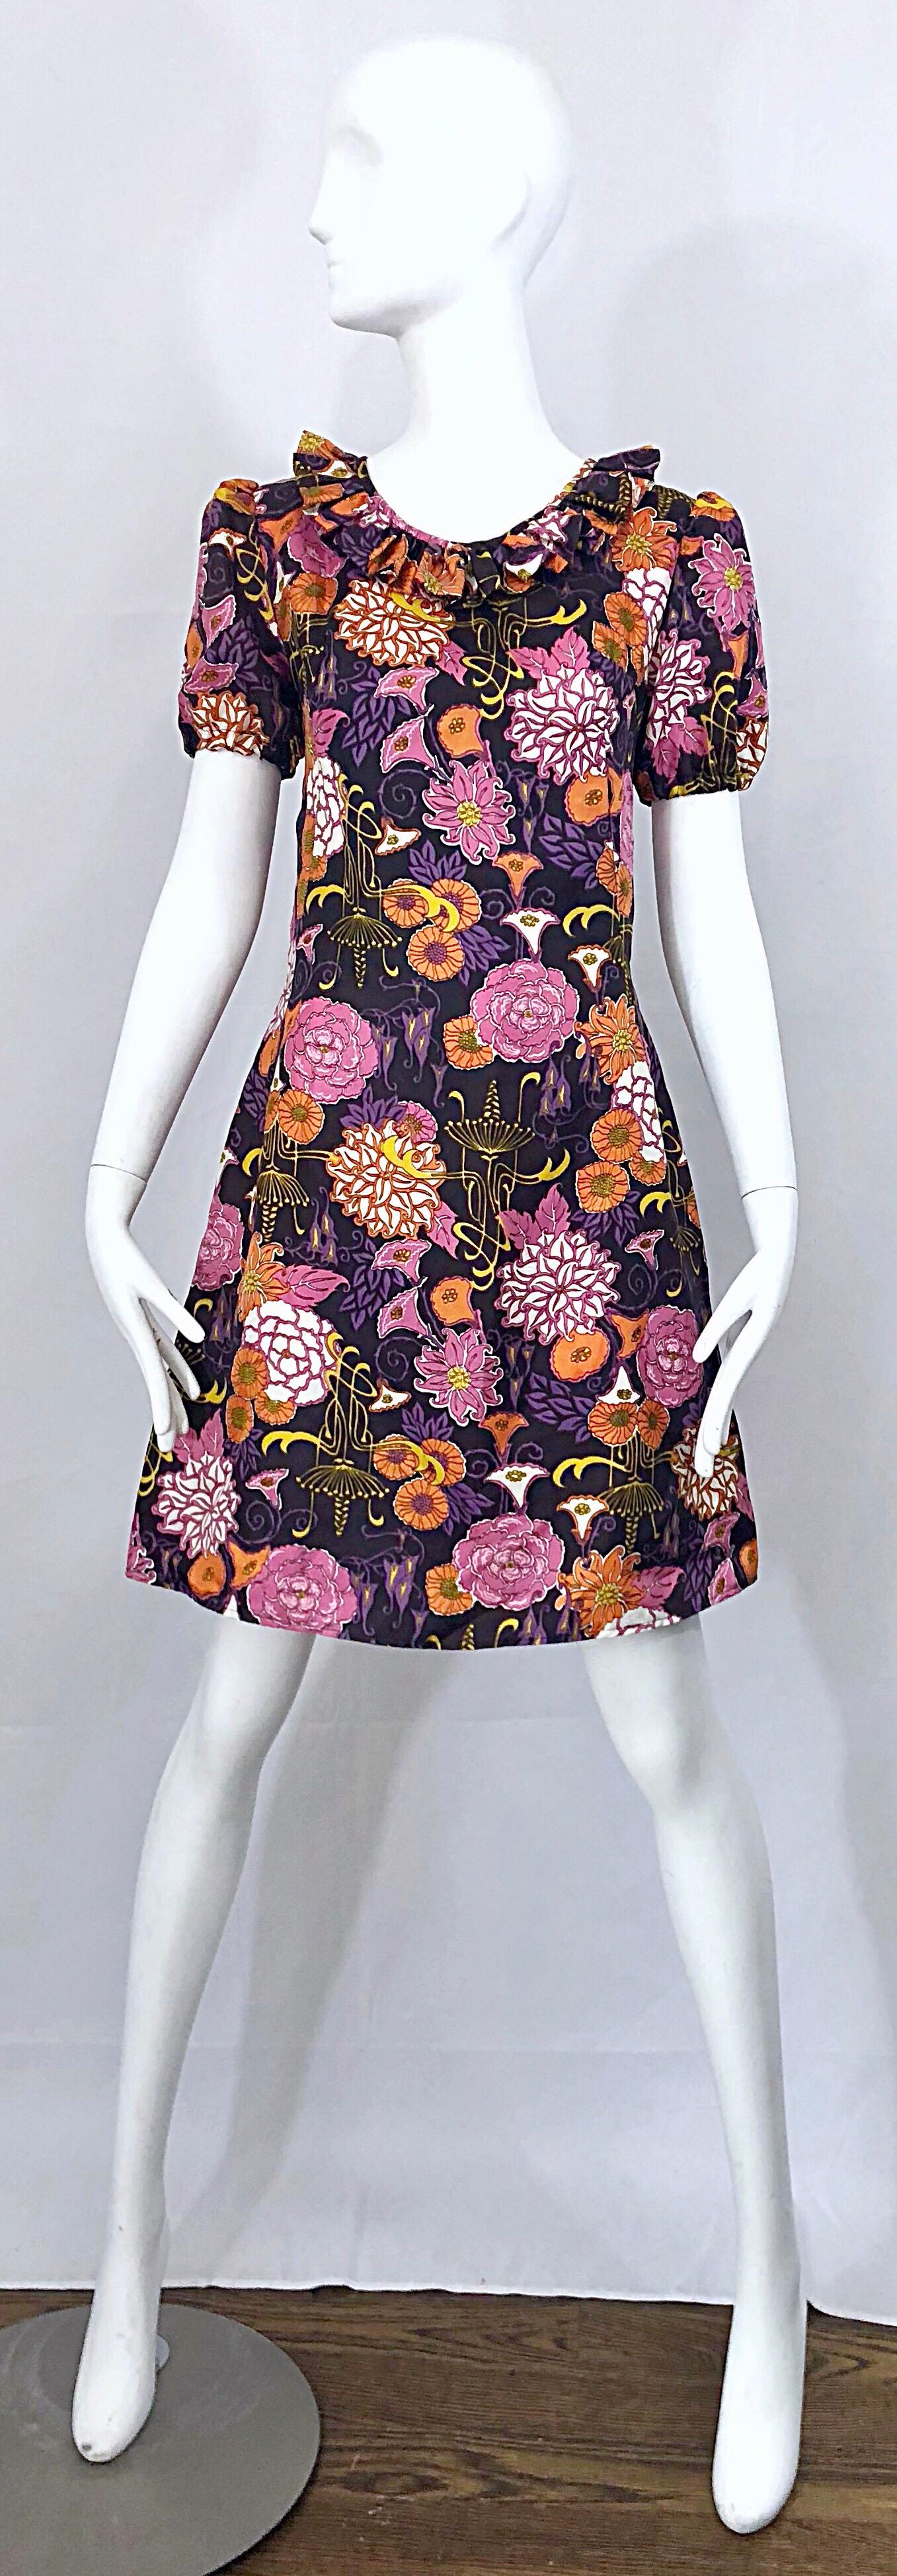 Chic späten 1960er Jahren Lotus Orchidee Neuheit Blumendruck kurze Puffärmel Vintage A-Linie Kleid! Der dunkelviolette Hintergrund ist mit rosafarbenen, orangefarbenen, gelben und lavendelfarbenen Lotosblumen, Orchideen und Blumen bedruckt. Der